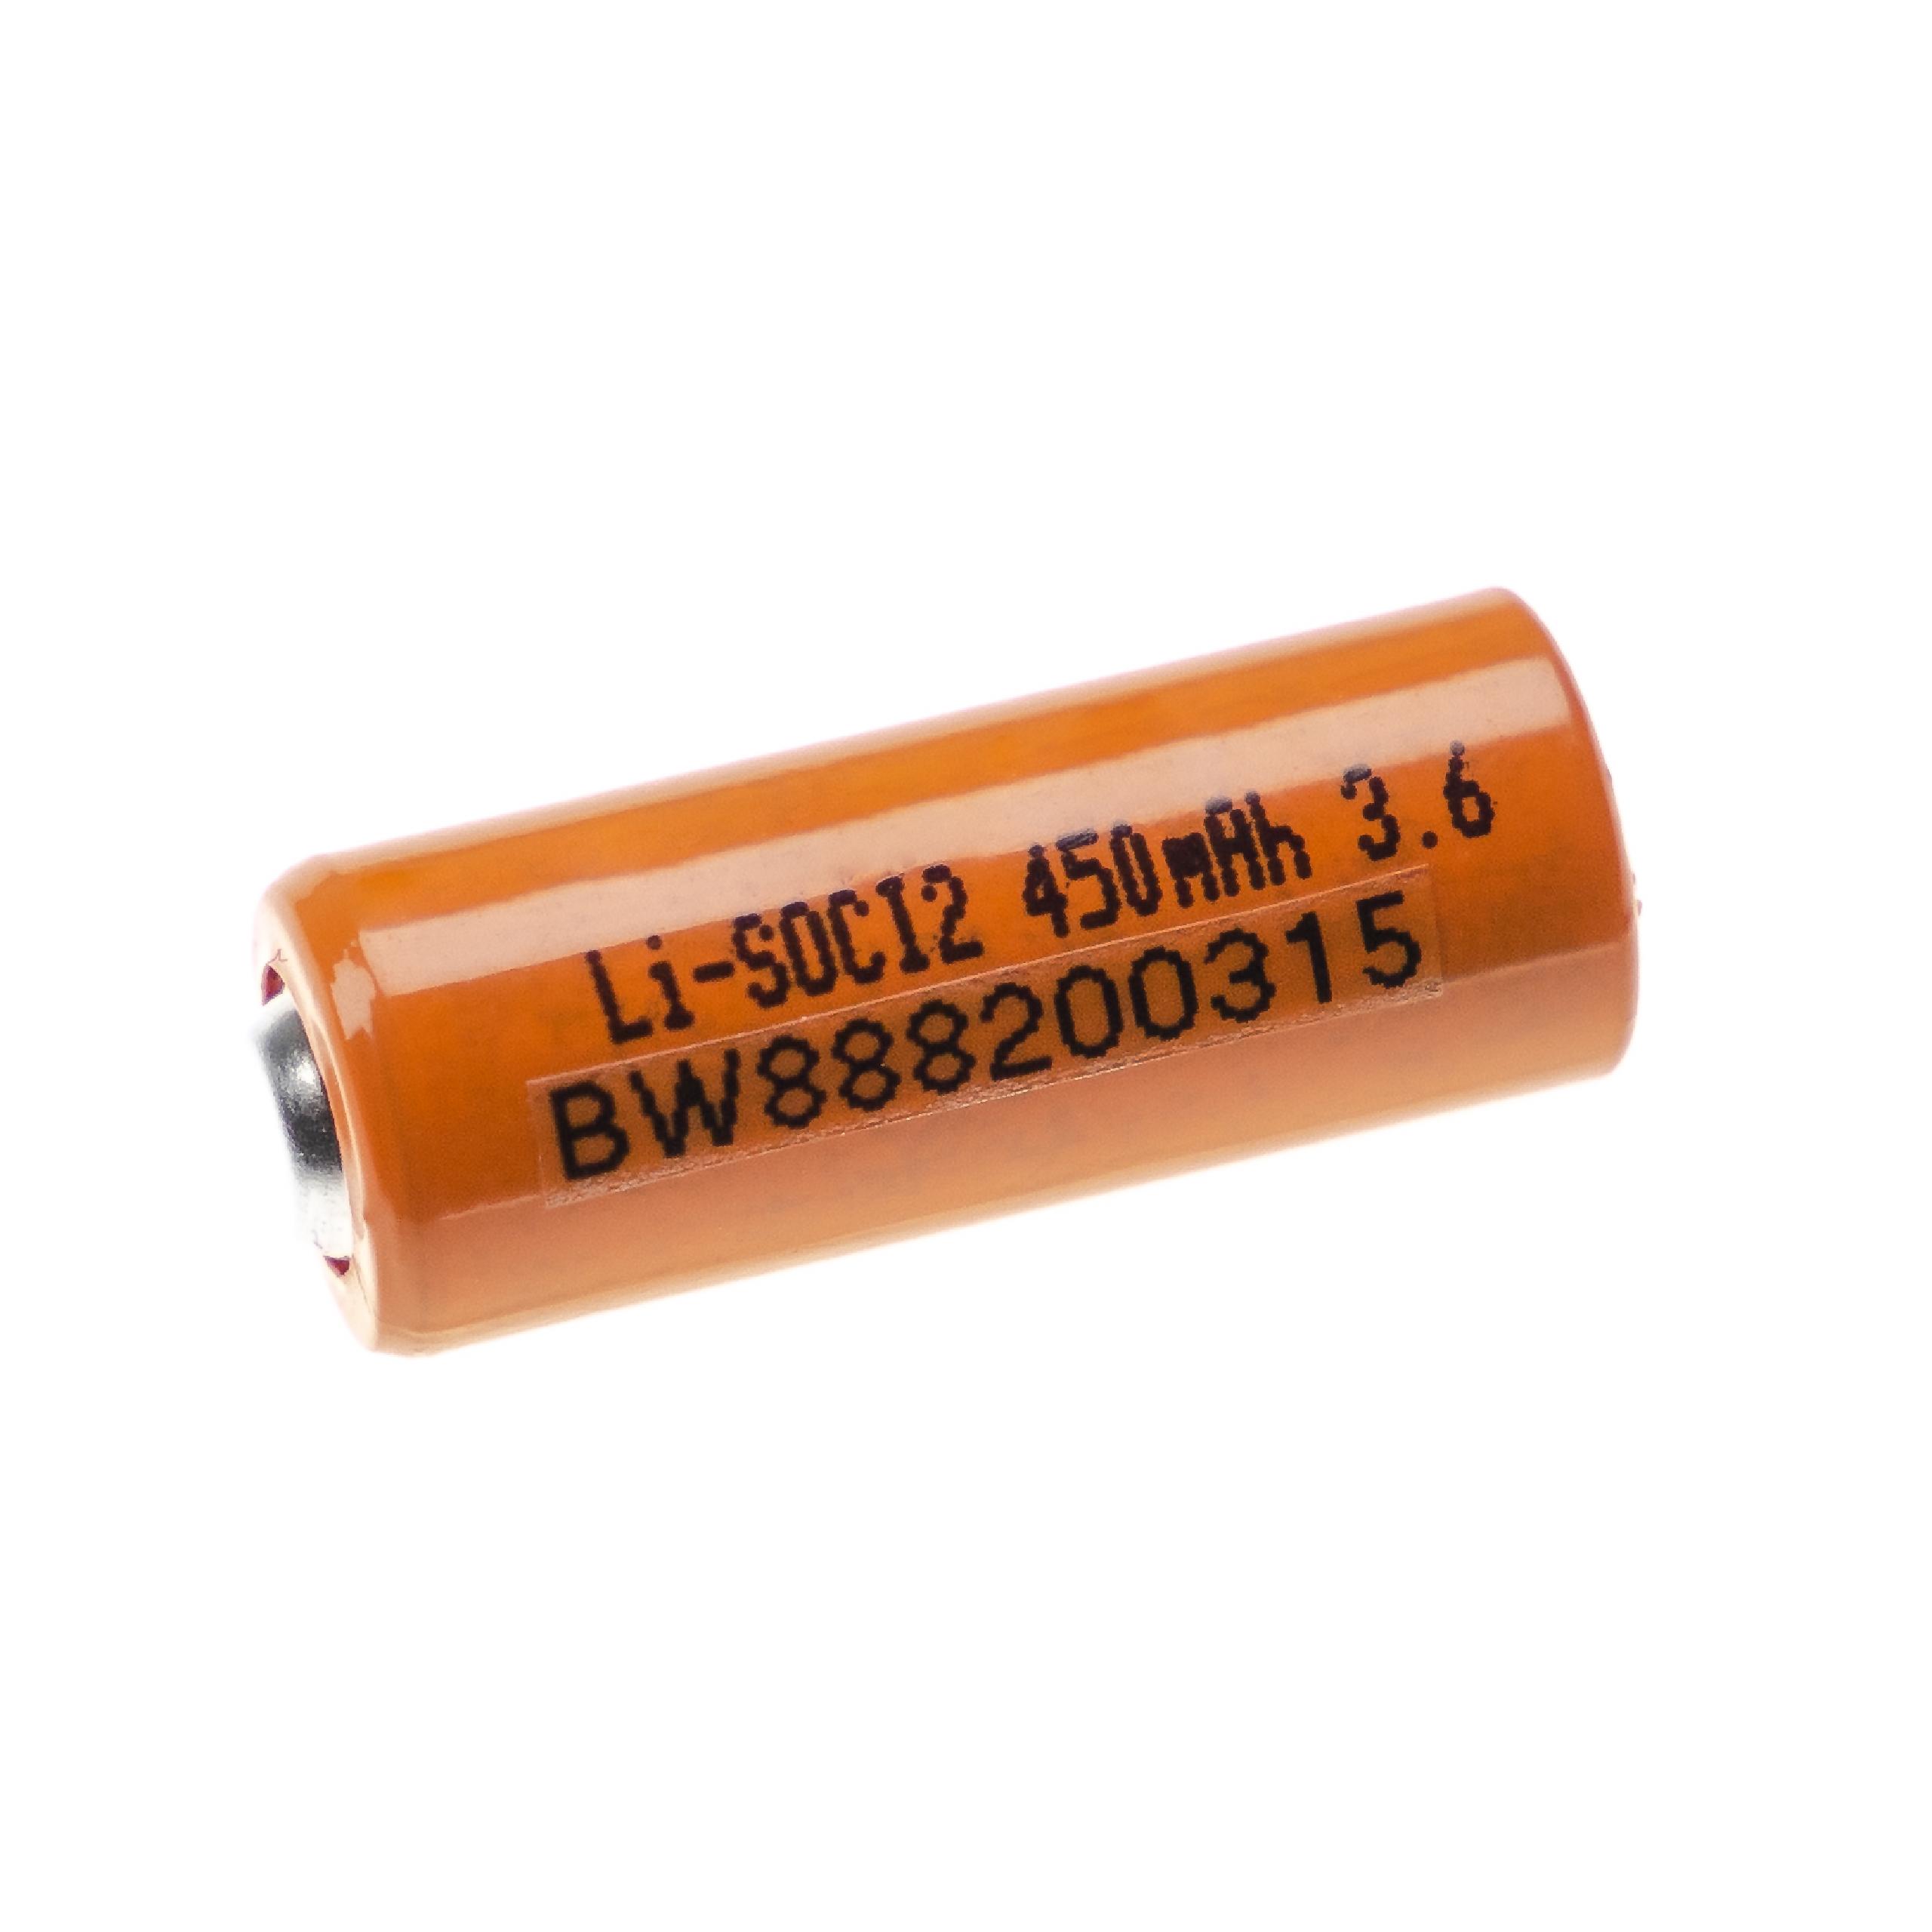 Bateria ER10280 - 450 mAh 3,6 V Li-SOCl2